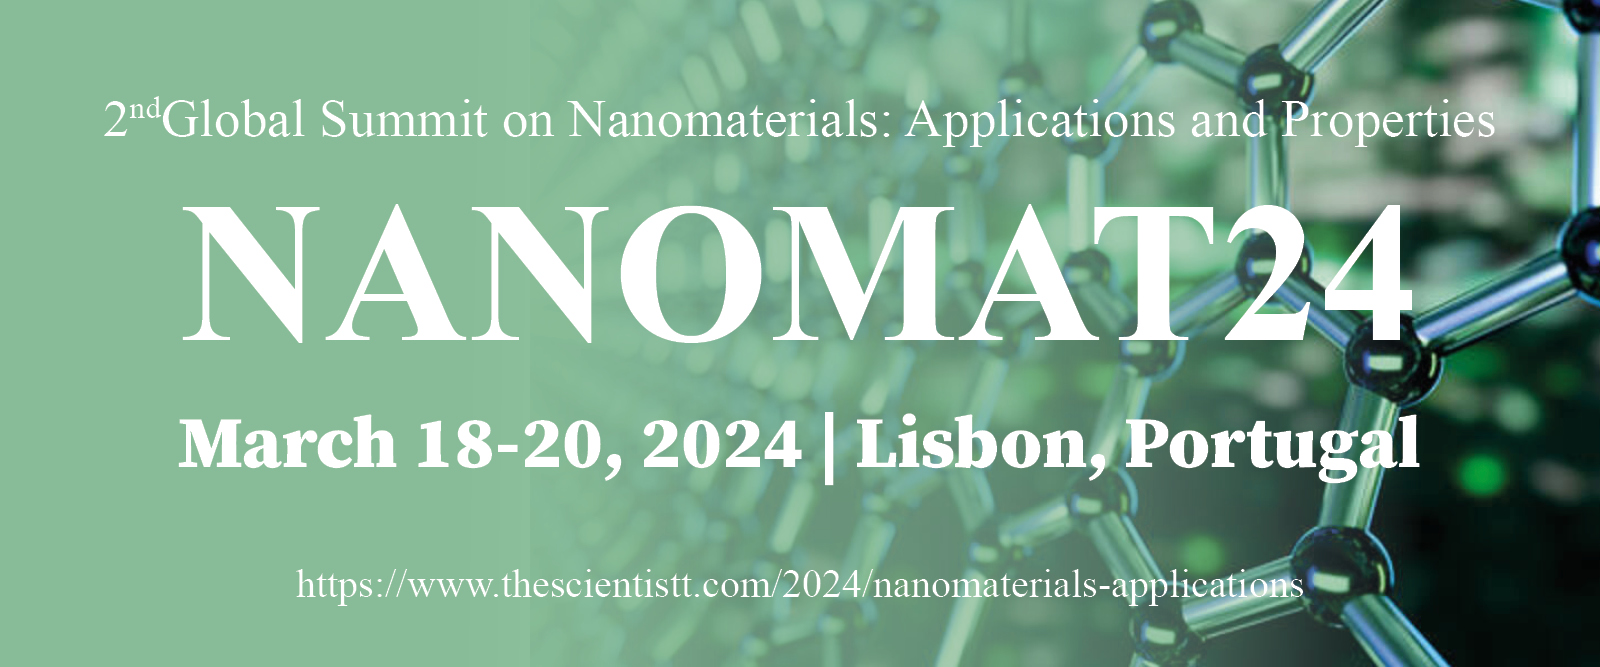 Nanomaterials: Applications and Properties, Lisbon, Lisboa, Portugal